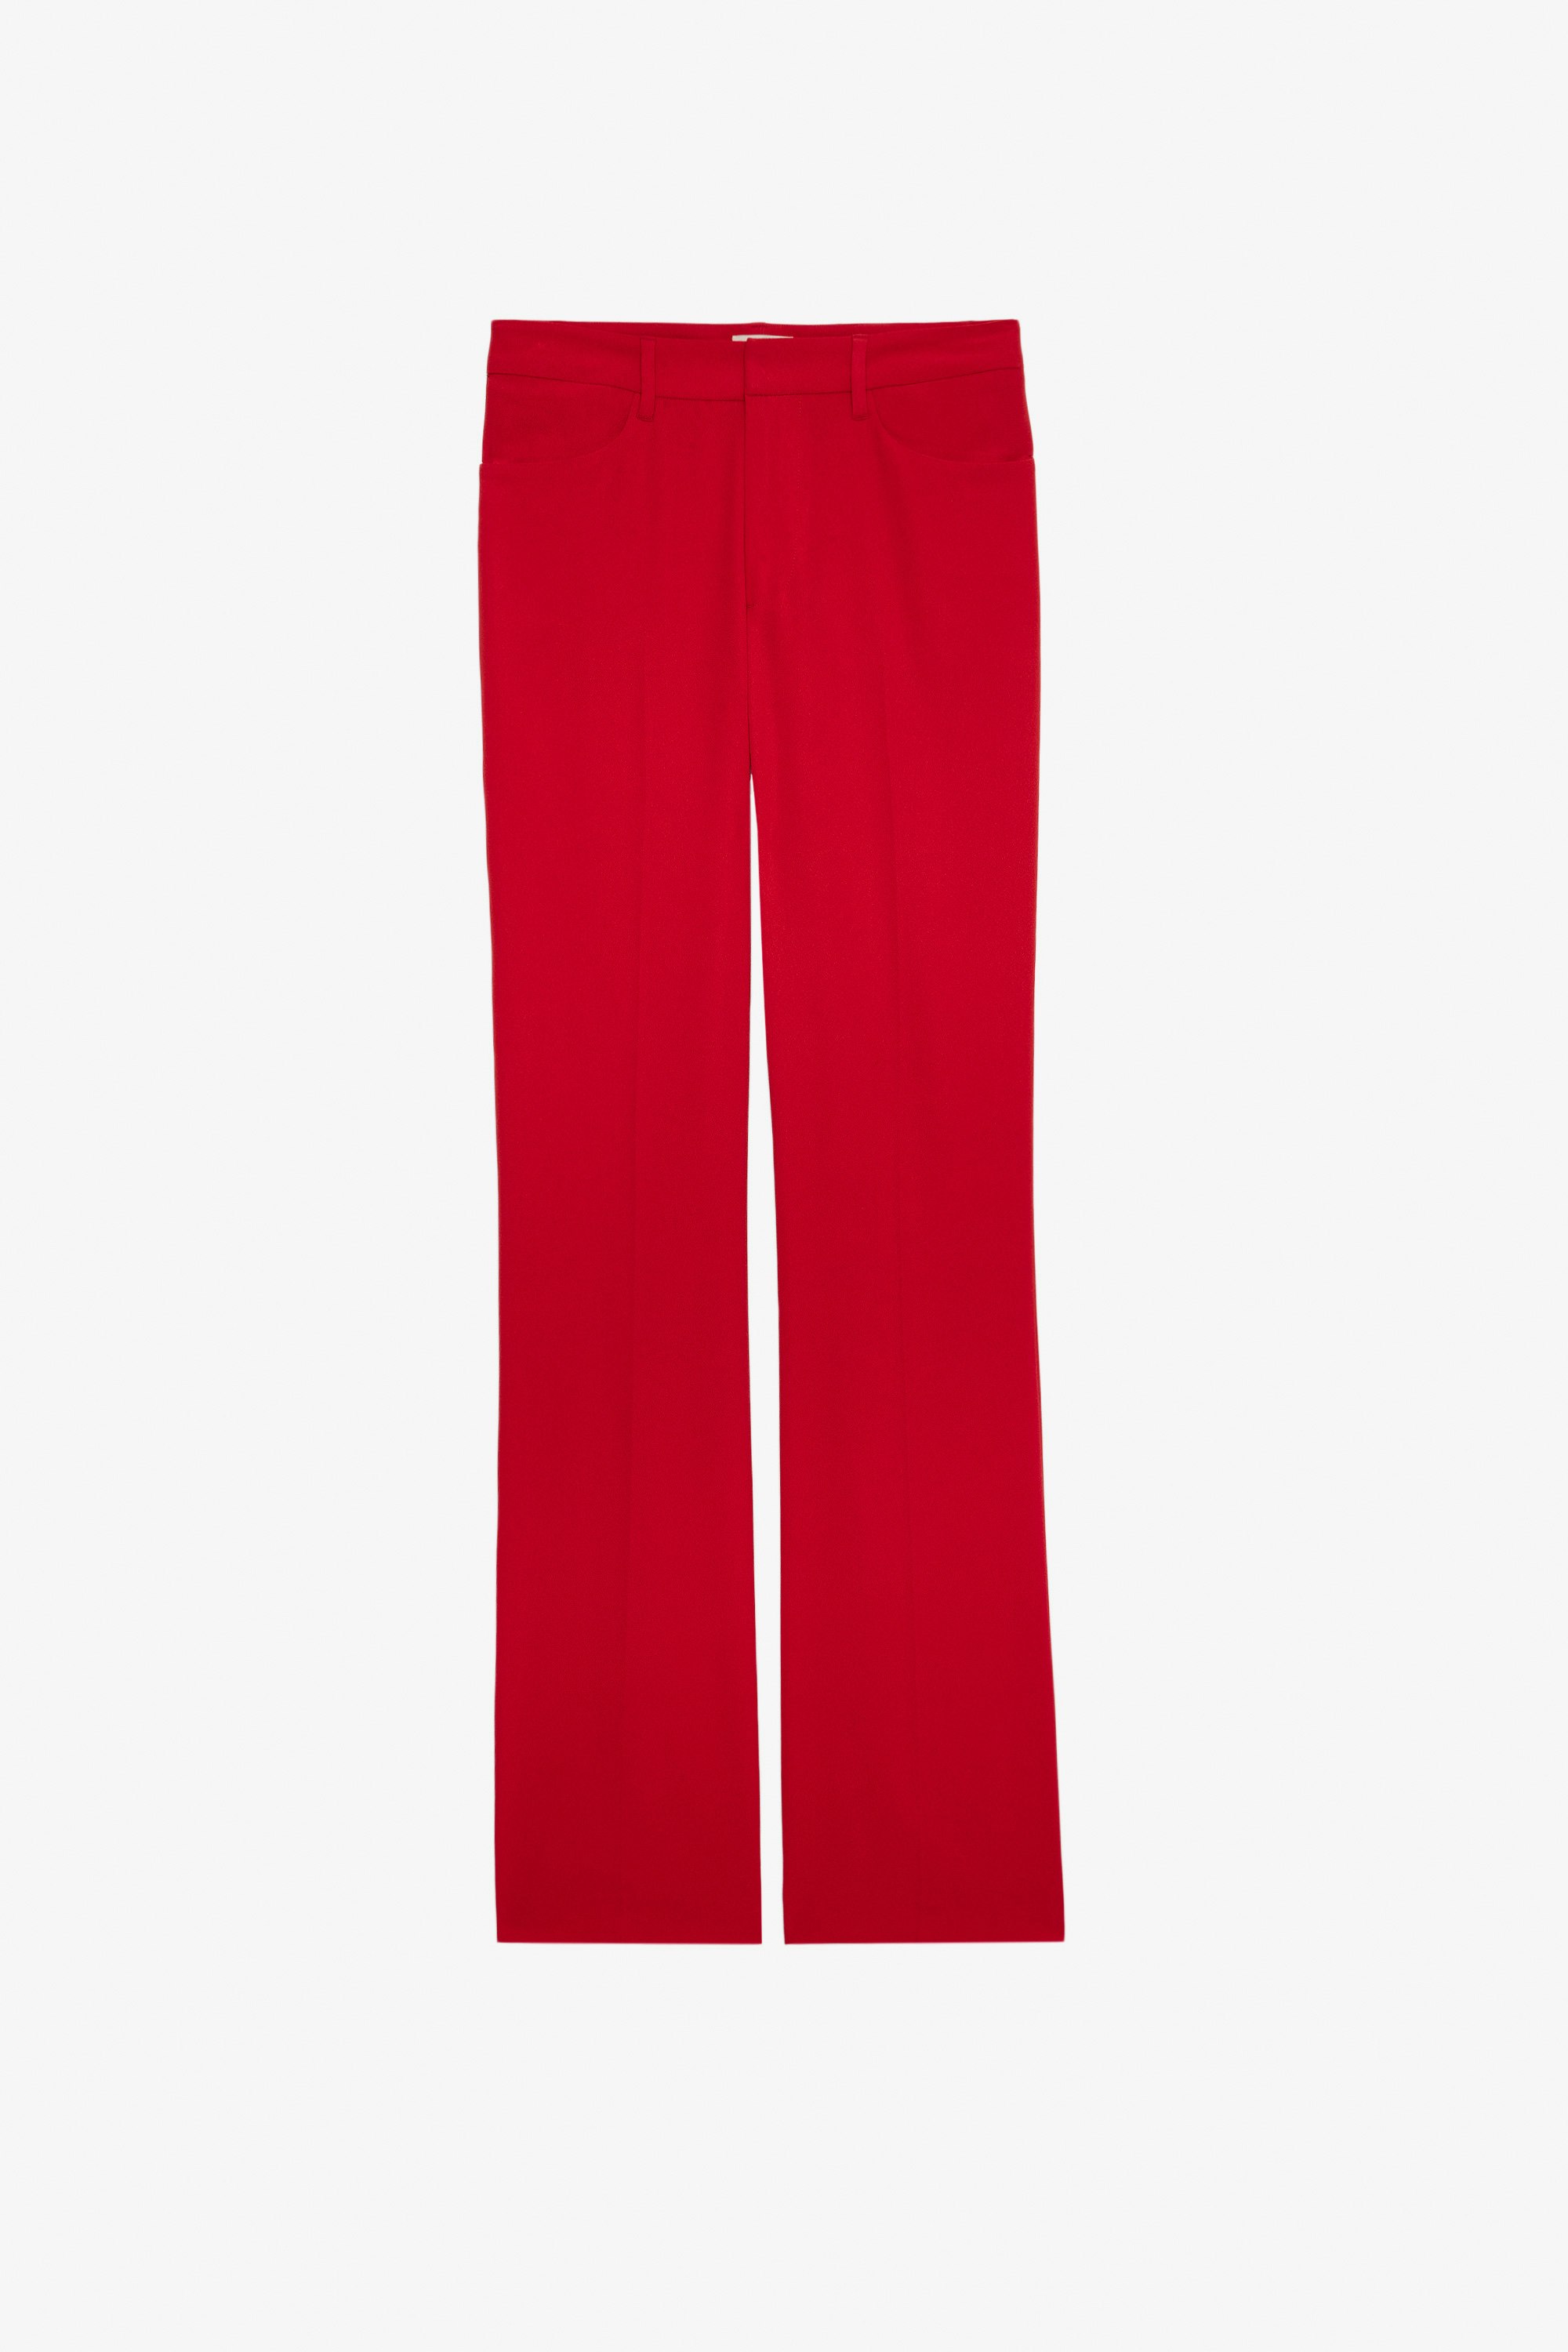 Pantalon Pistol - Pantalon de tailleur en crêpe rouge.